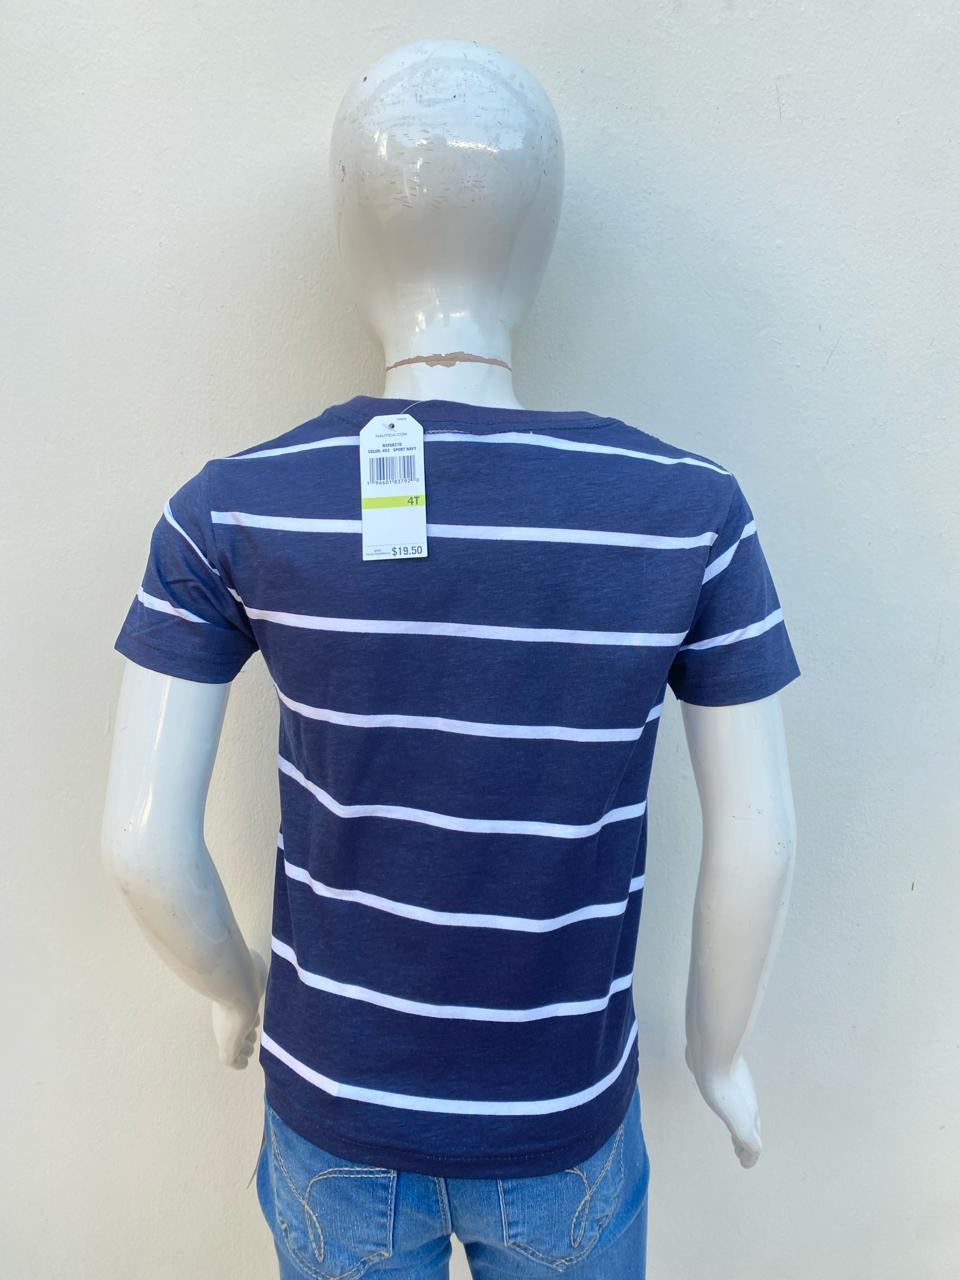 T-shirt Nautica original, azul oscuro con rayas blancas y logotipo de la marca al lado.